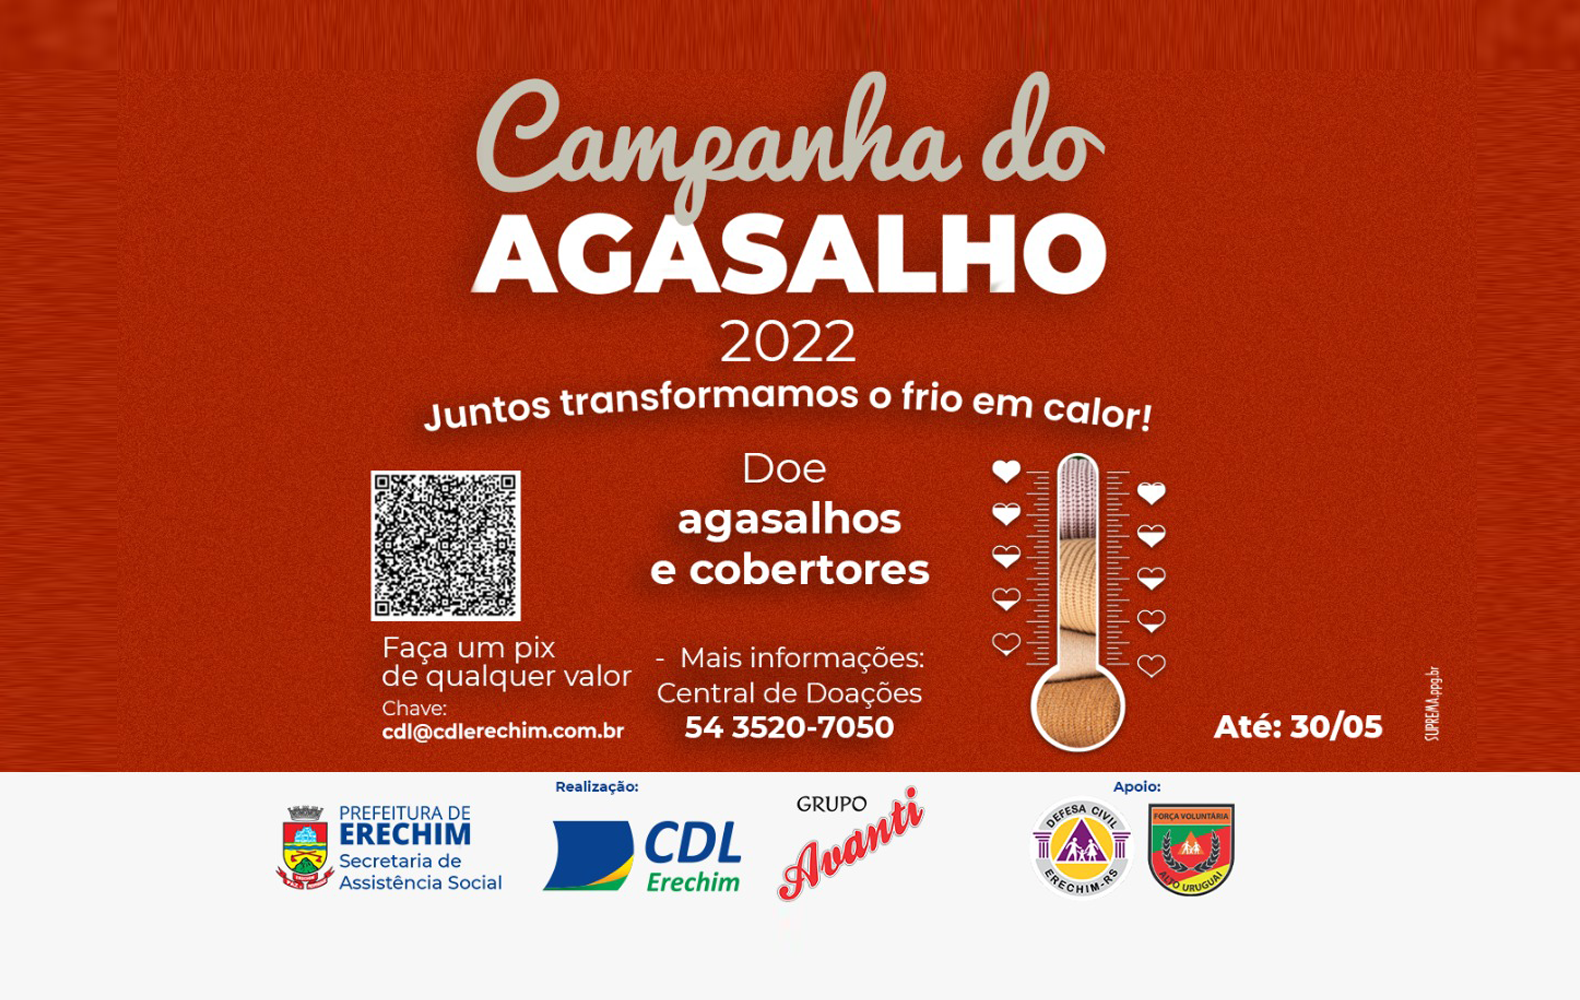  Campanha do Agasalho 2022: Juntos transformamos o frio em calor